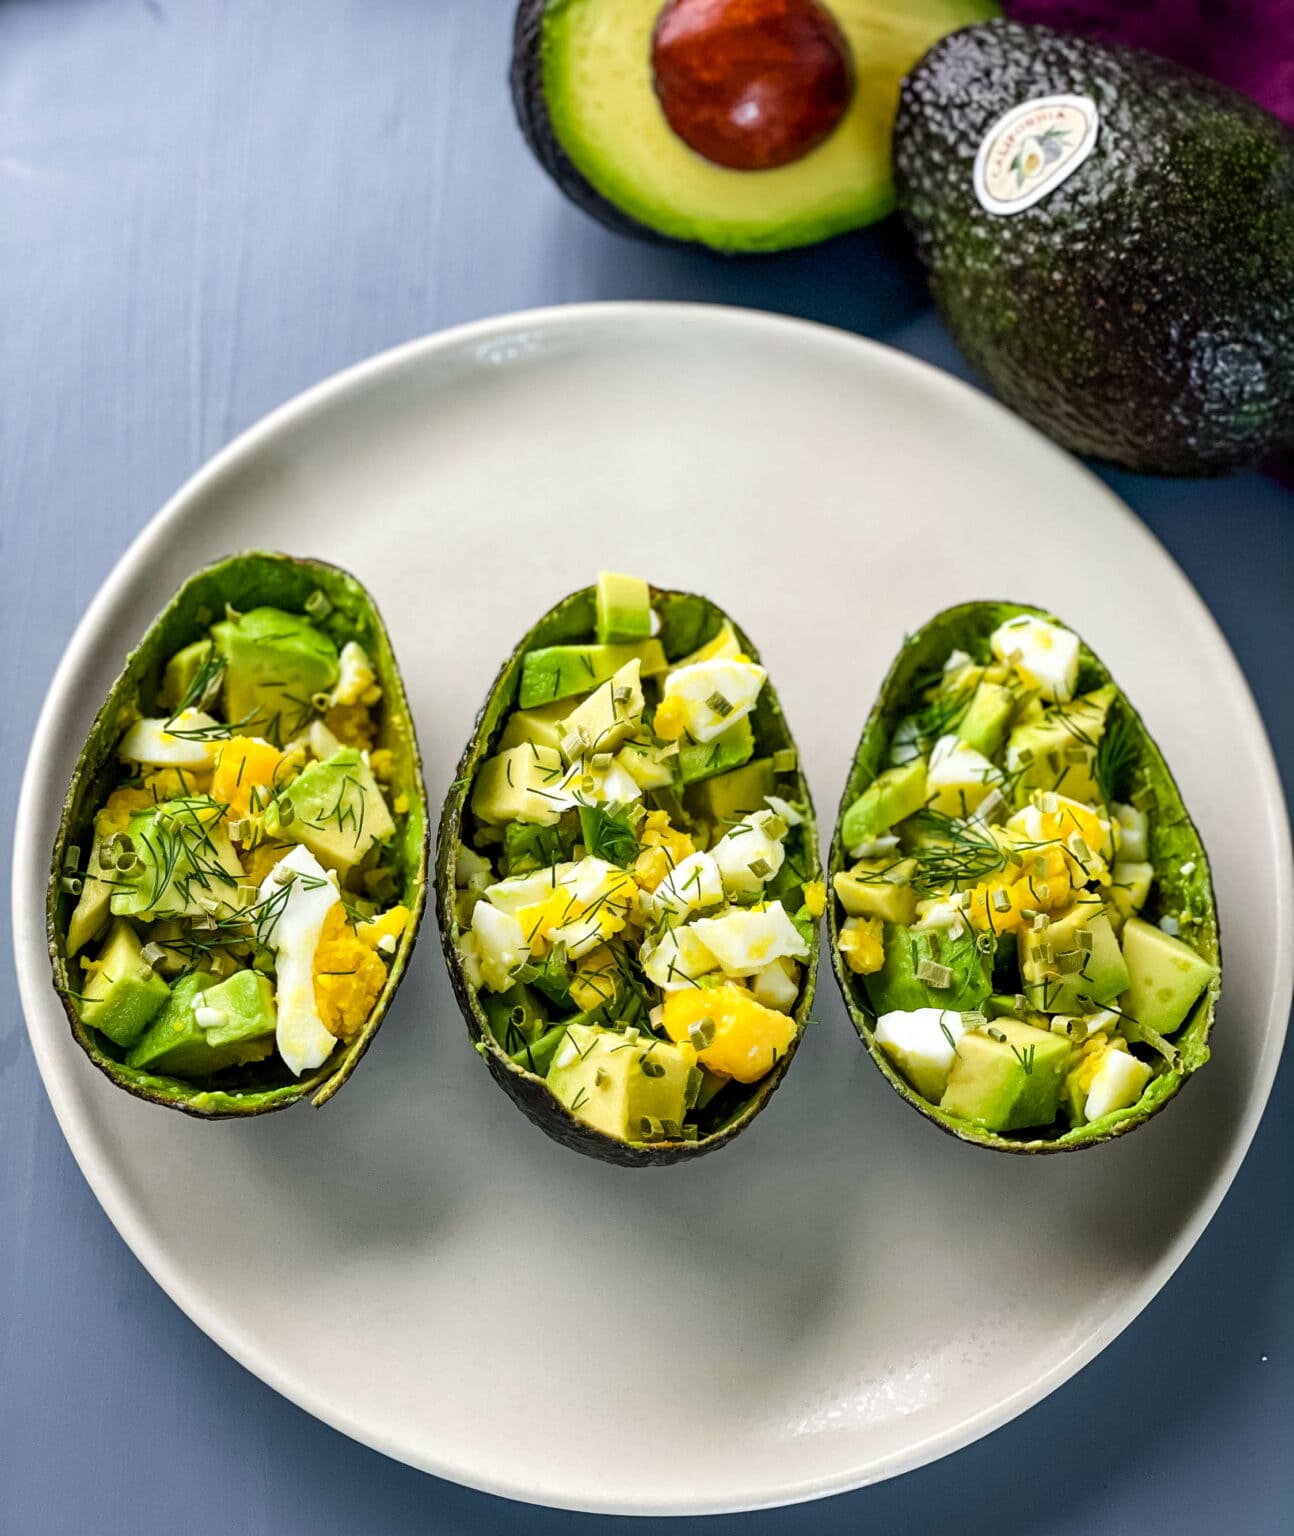 https://californiaavocado.com/wp-content/uploads/2022/03/Avocado-Egg-Salad-Cups-3.jpg